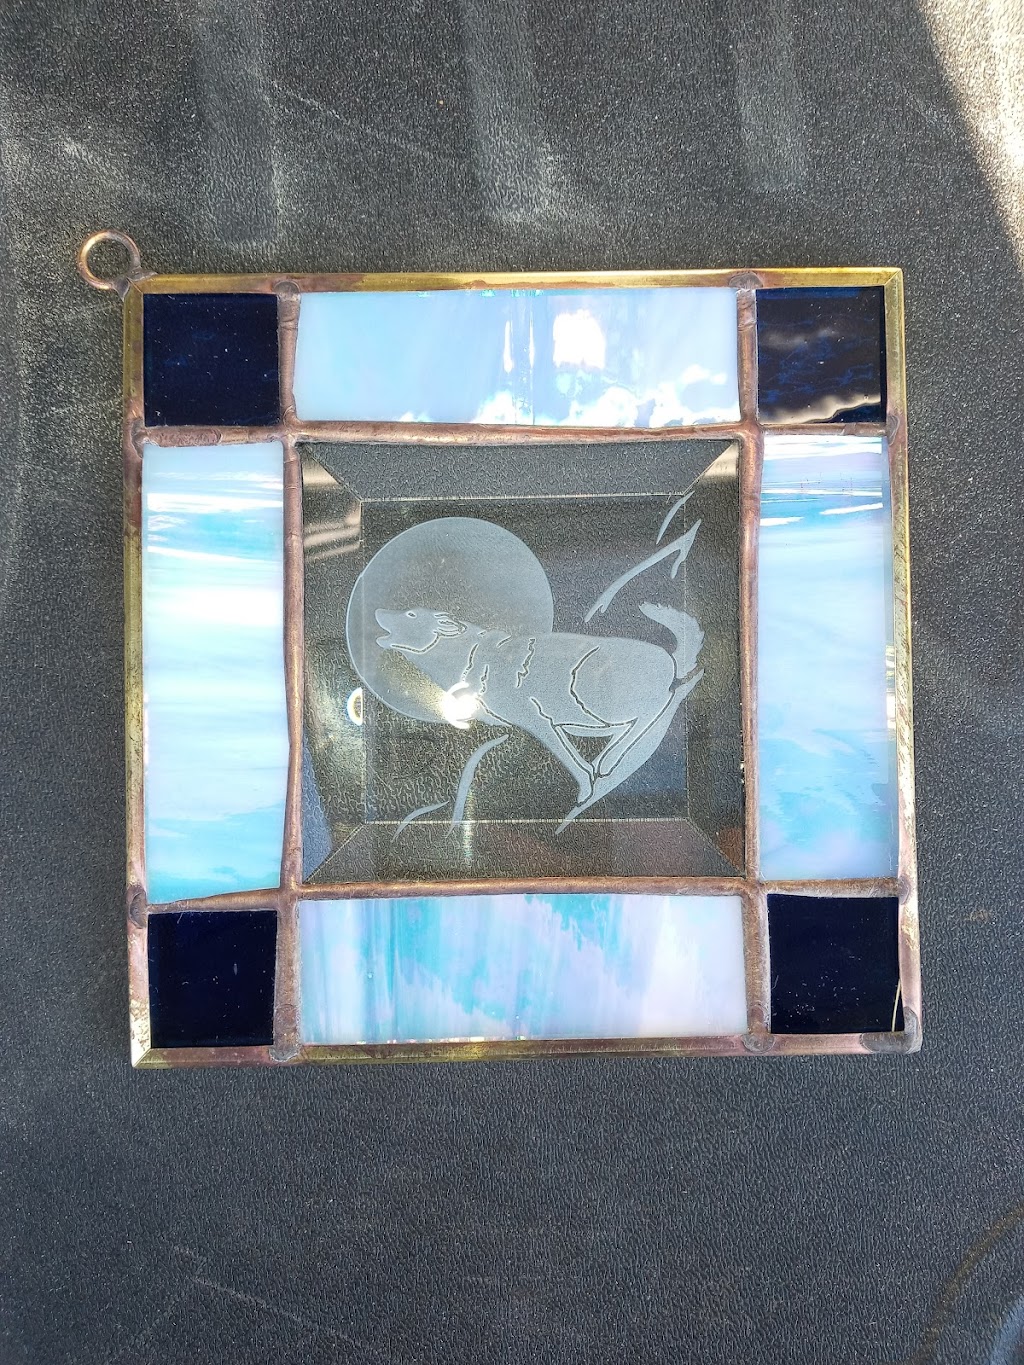 Krauski Art Glass | W302n9493 County Hwy E, Hartland, WI 53029, USA | Phone: (262) 966-7500